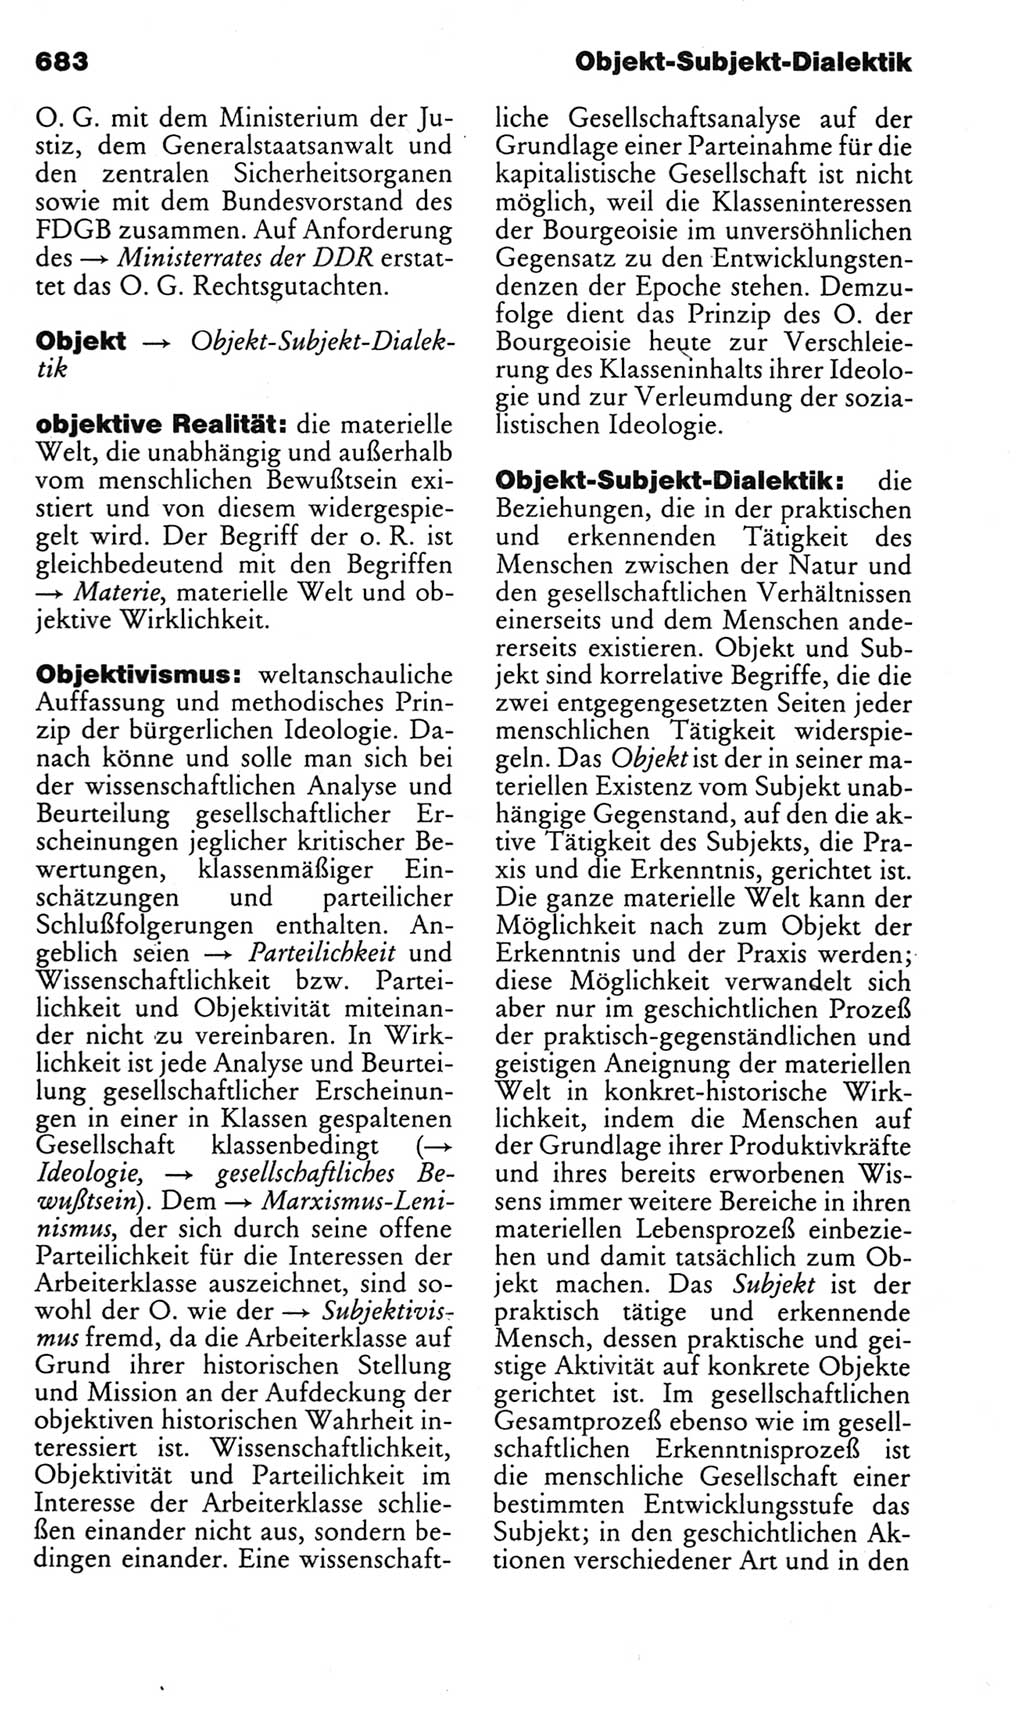 Kleines politisches Wörterbuch [Deutsche Demokratische Republik (DDR)] 1983, Seite 683 (Kl. pol. Wb. DDR 1983, S. 683)